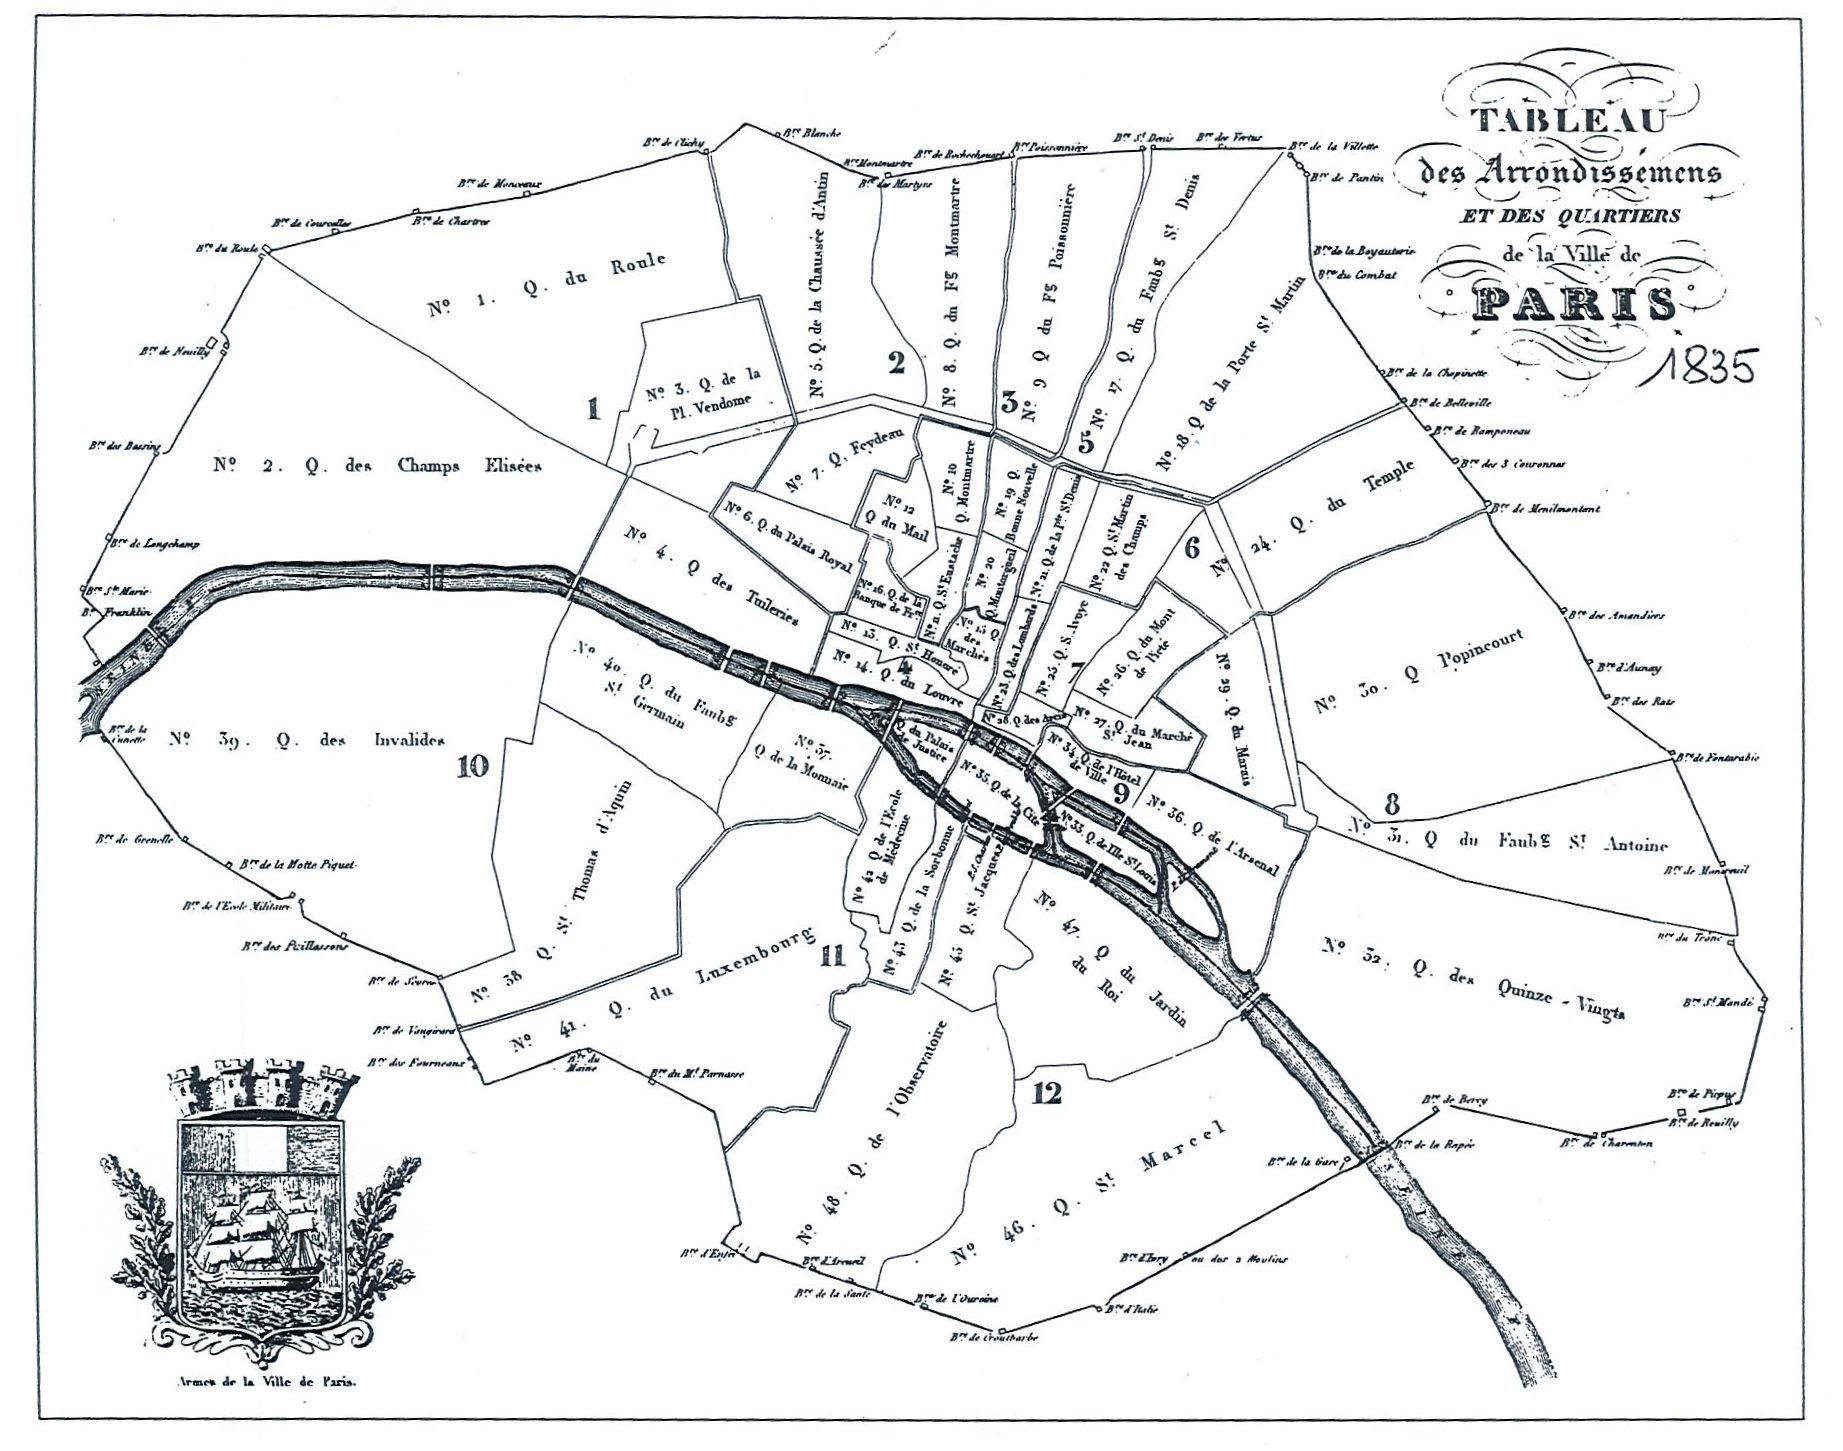 Carte de la ville de Paris présentant les anciens arrondissements, 1835.